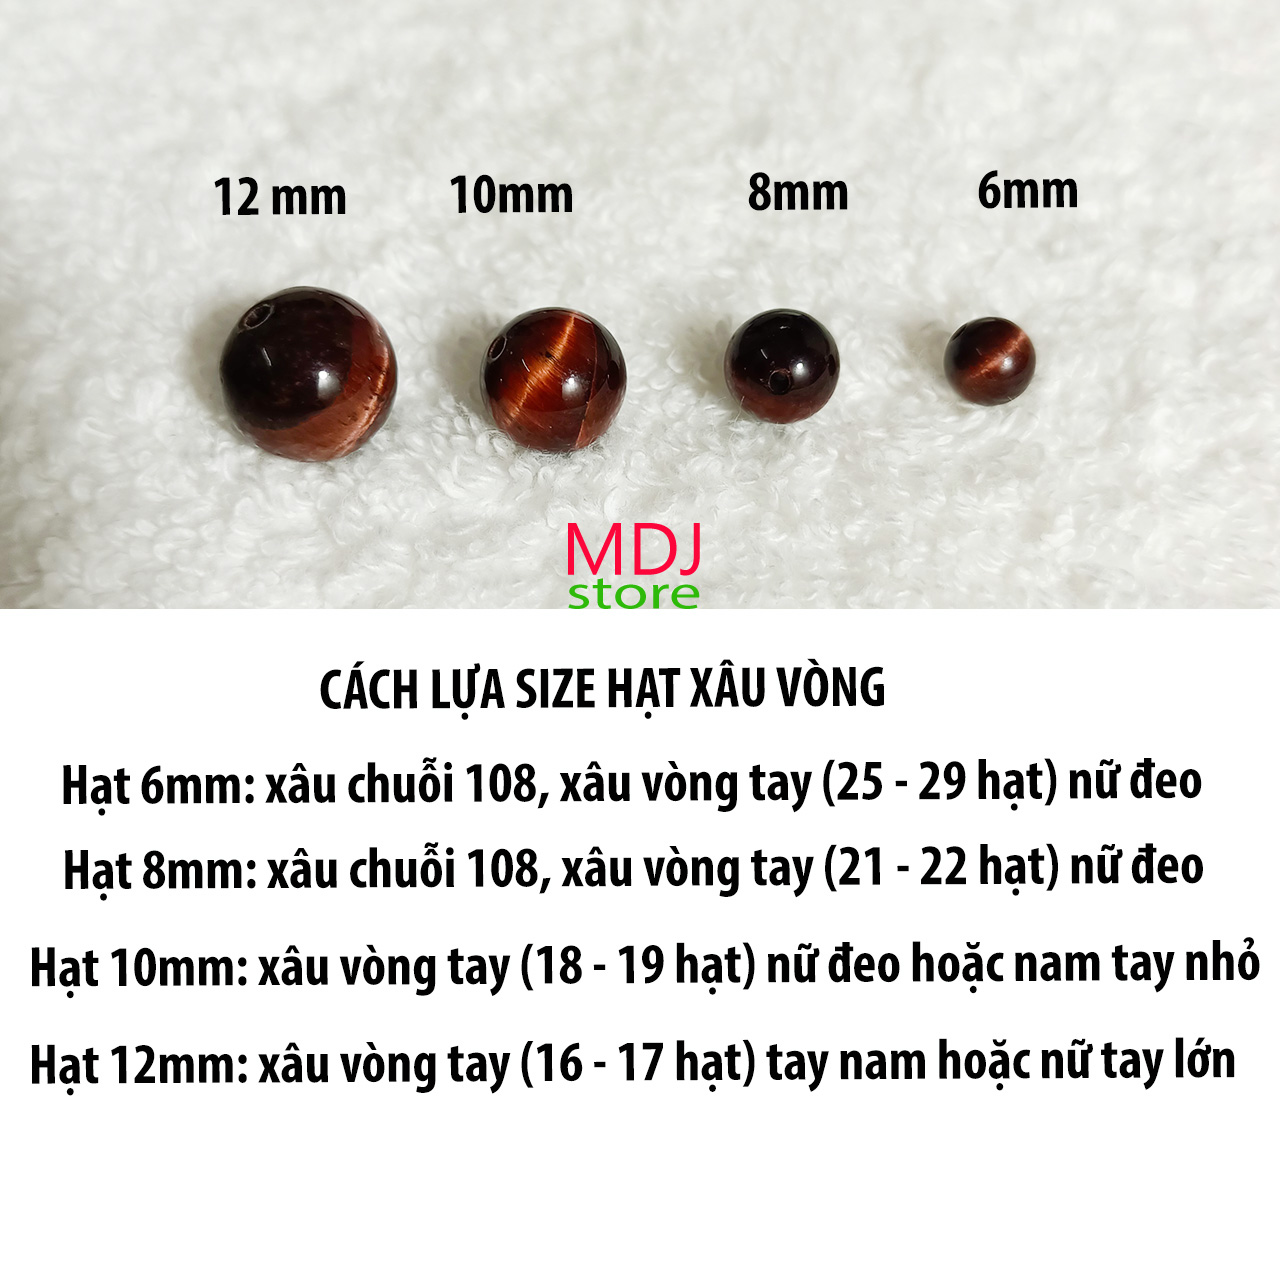 Hạt Lẻ Đá Mắt Hổ Nâu Đỏ MDJ Cỡ hạt 6 8 10 12 mm Phụ Kiện Làm Vòng Tay Phong Thủy Mệnh Hỏa và Thổ, Trang Sức Handmade